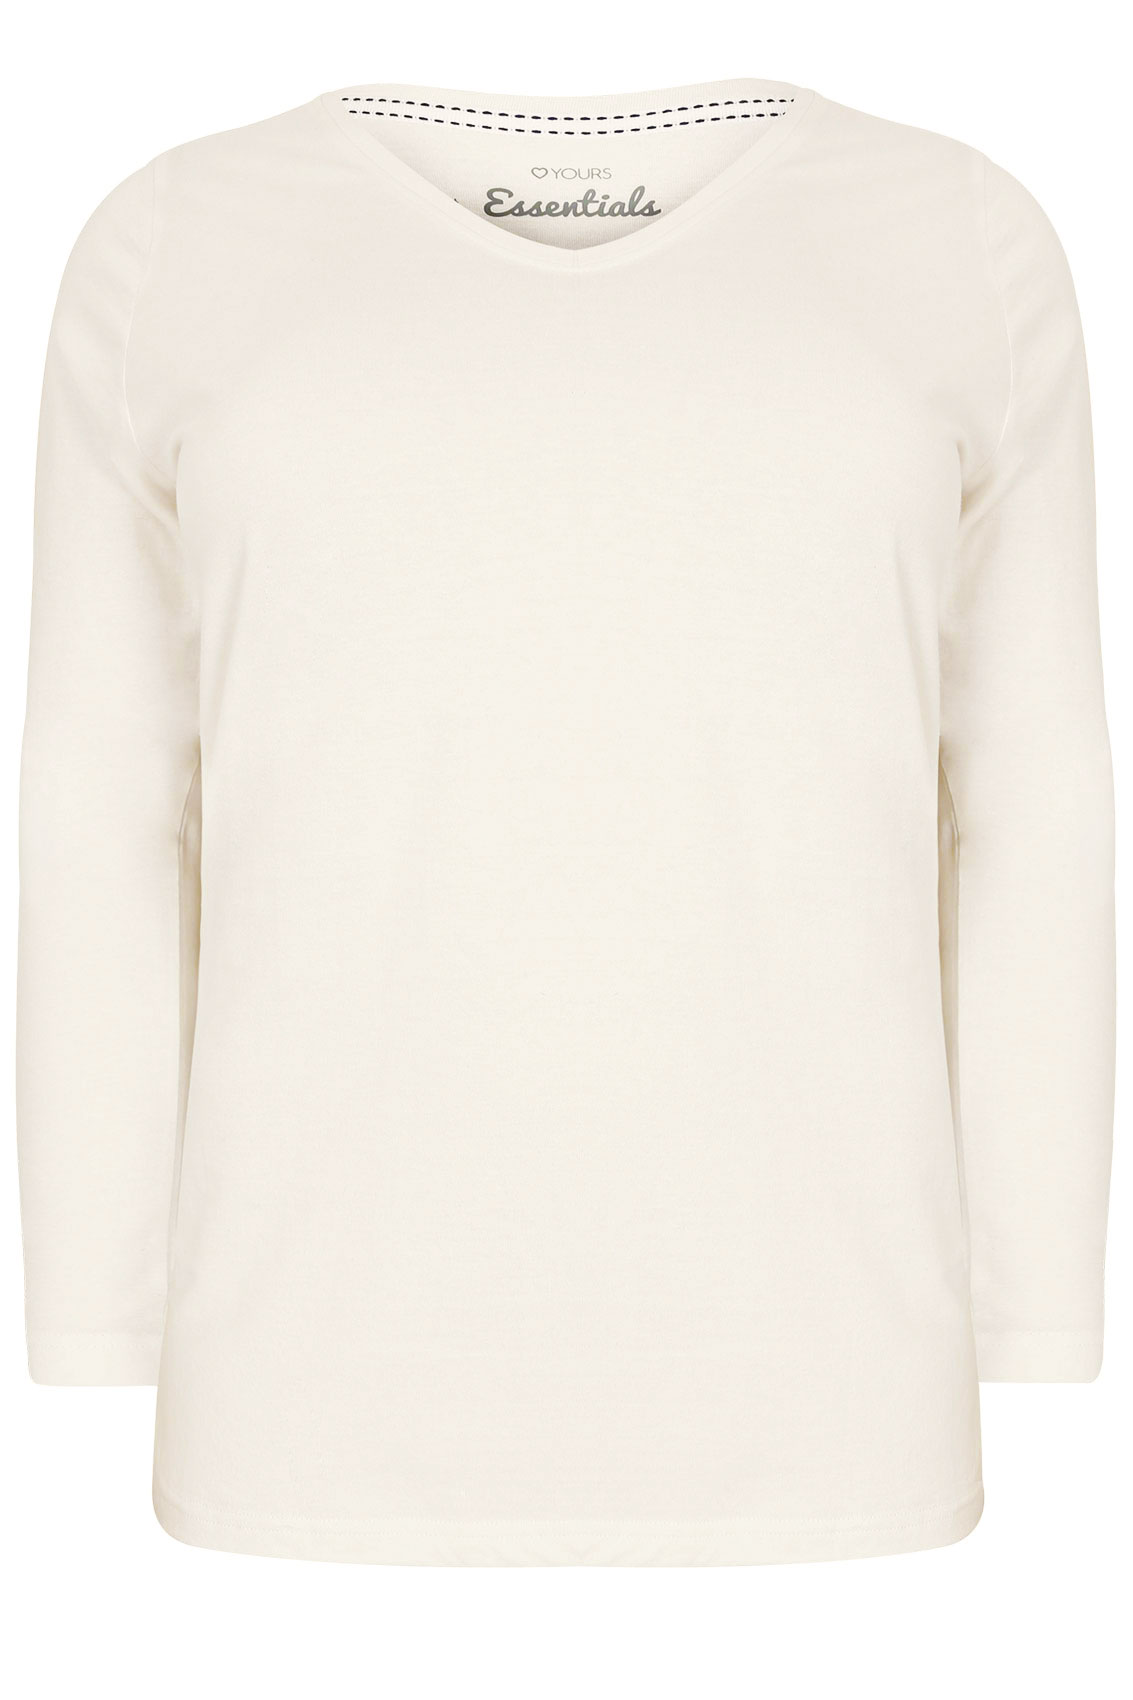 Ivory Long Sleeved V-Neck Basic T-Shirt Plus Size 16 to 36